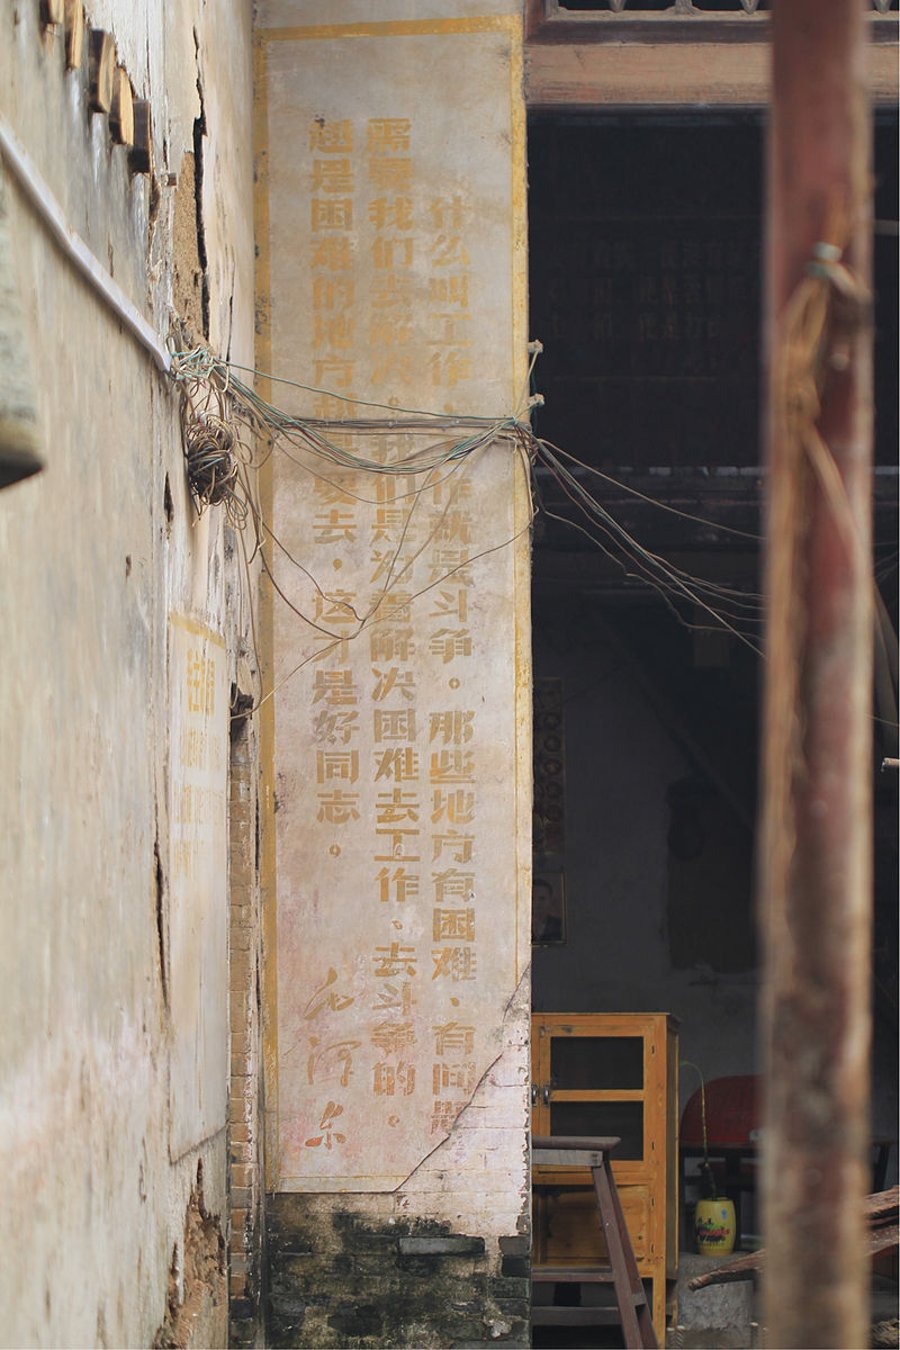 ציטוטים של מאו על חומת מיקום שהיה מרכזי בעינויים אכזריים של אינטלקטואלים